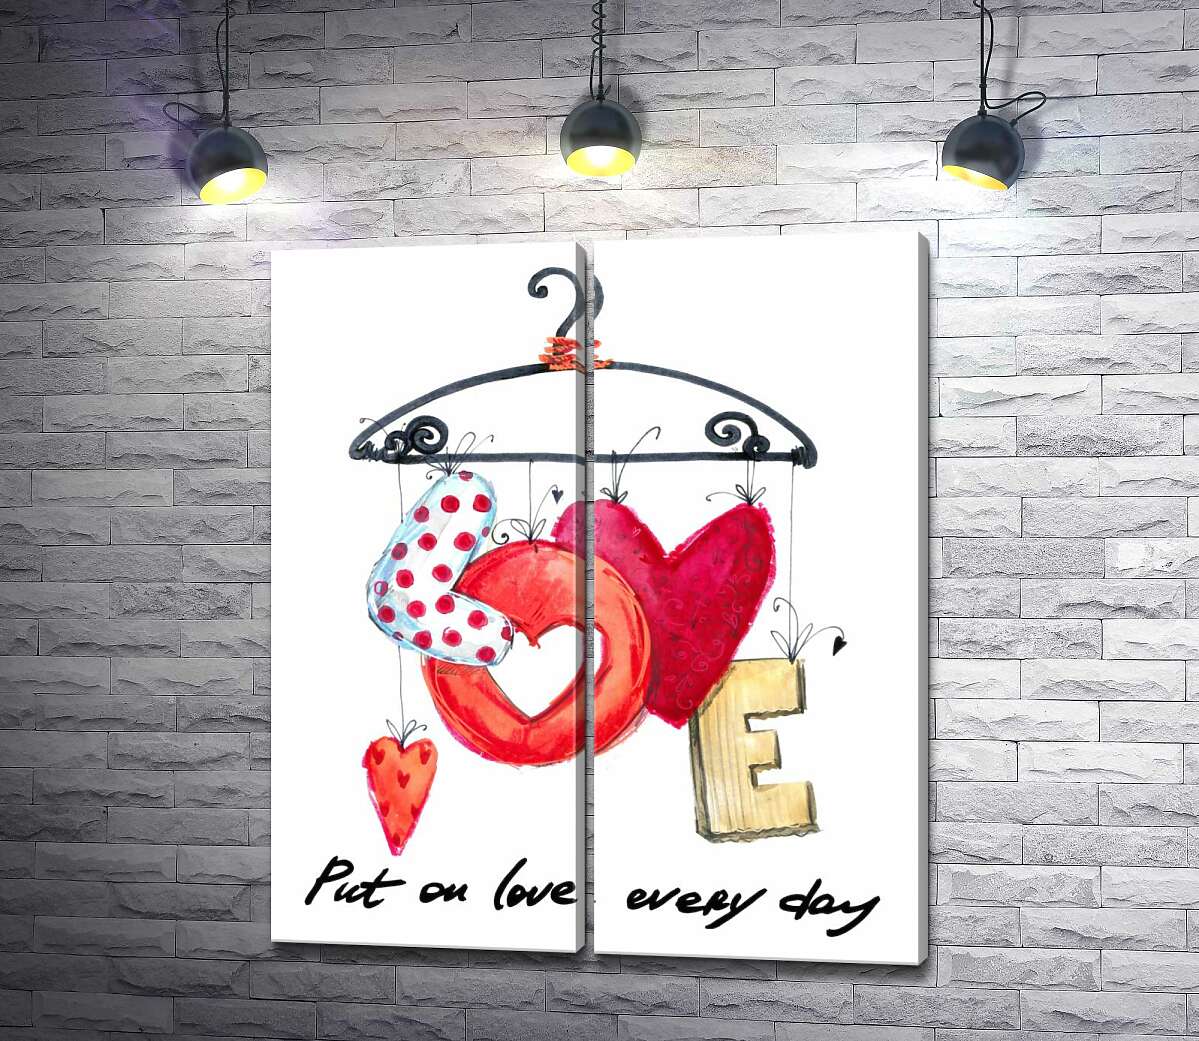 модульная картина Цветные буквы "love" висят на вешалке